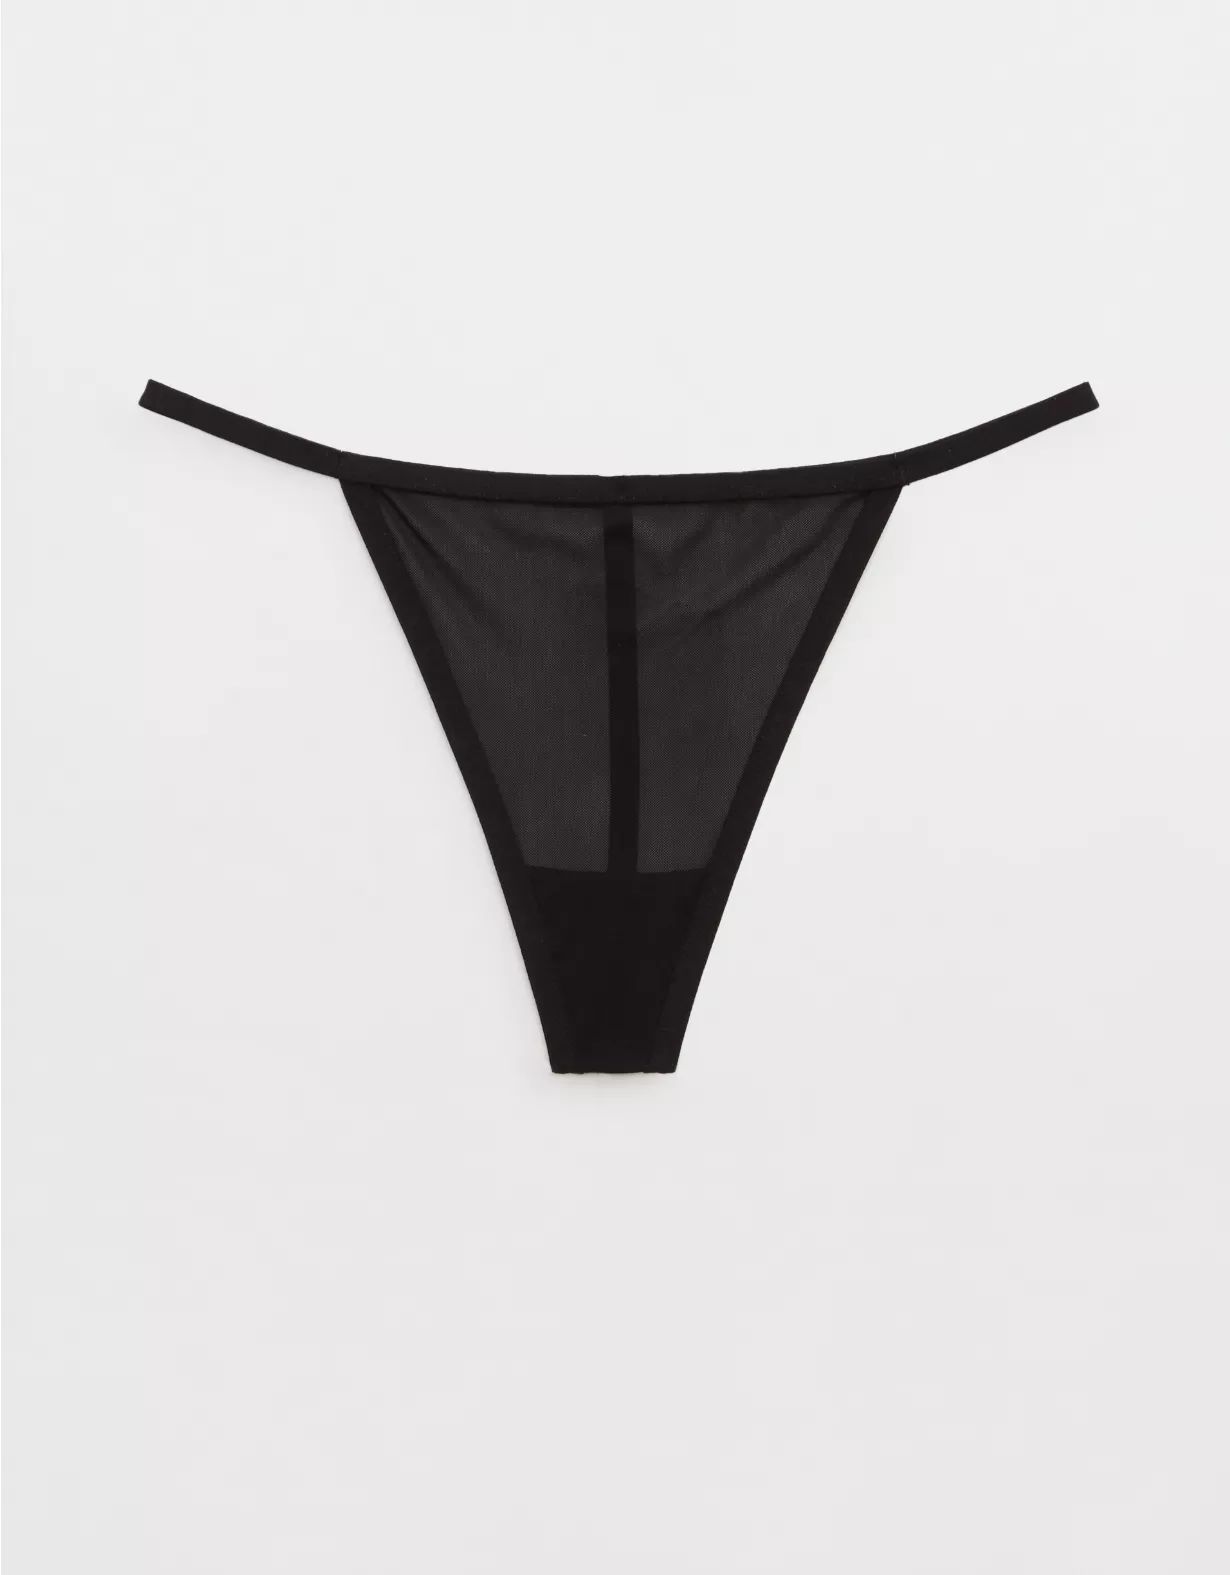 SMOOTHEZ Mesh String Thong Underwear | Aerie